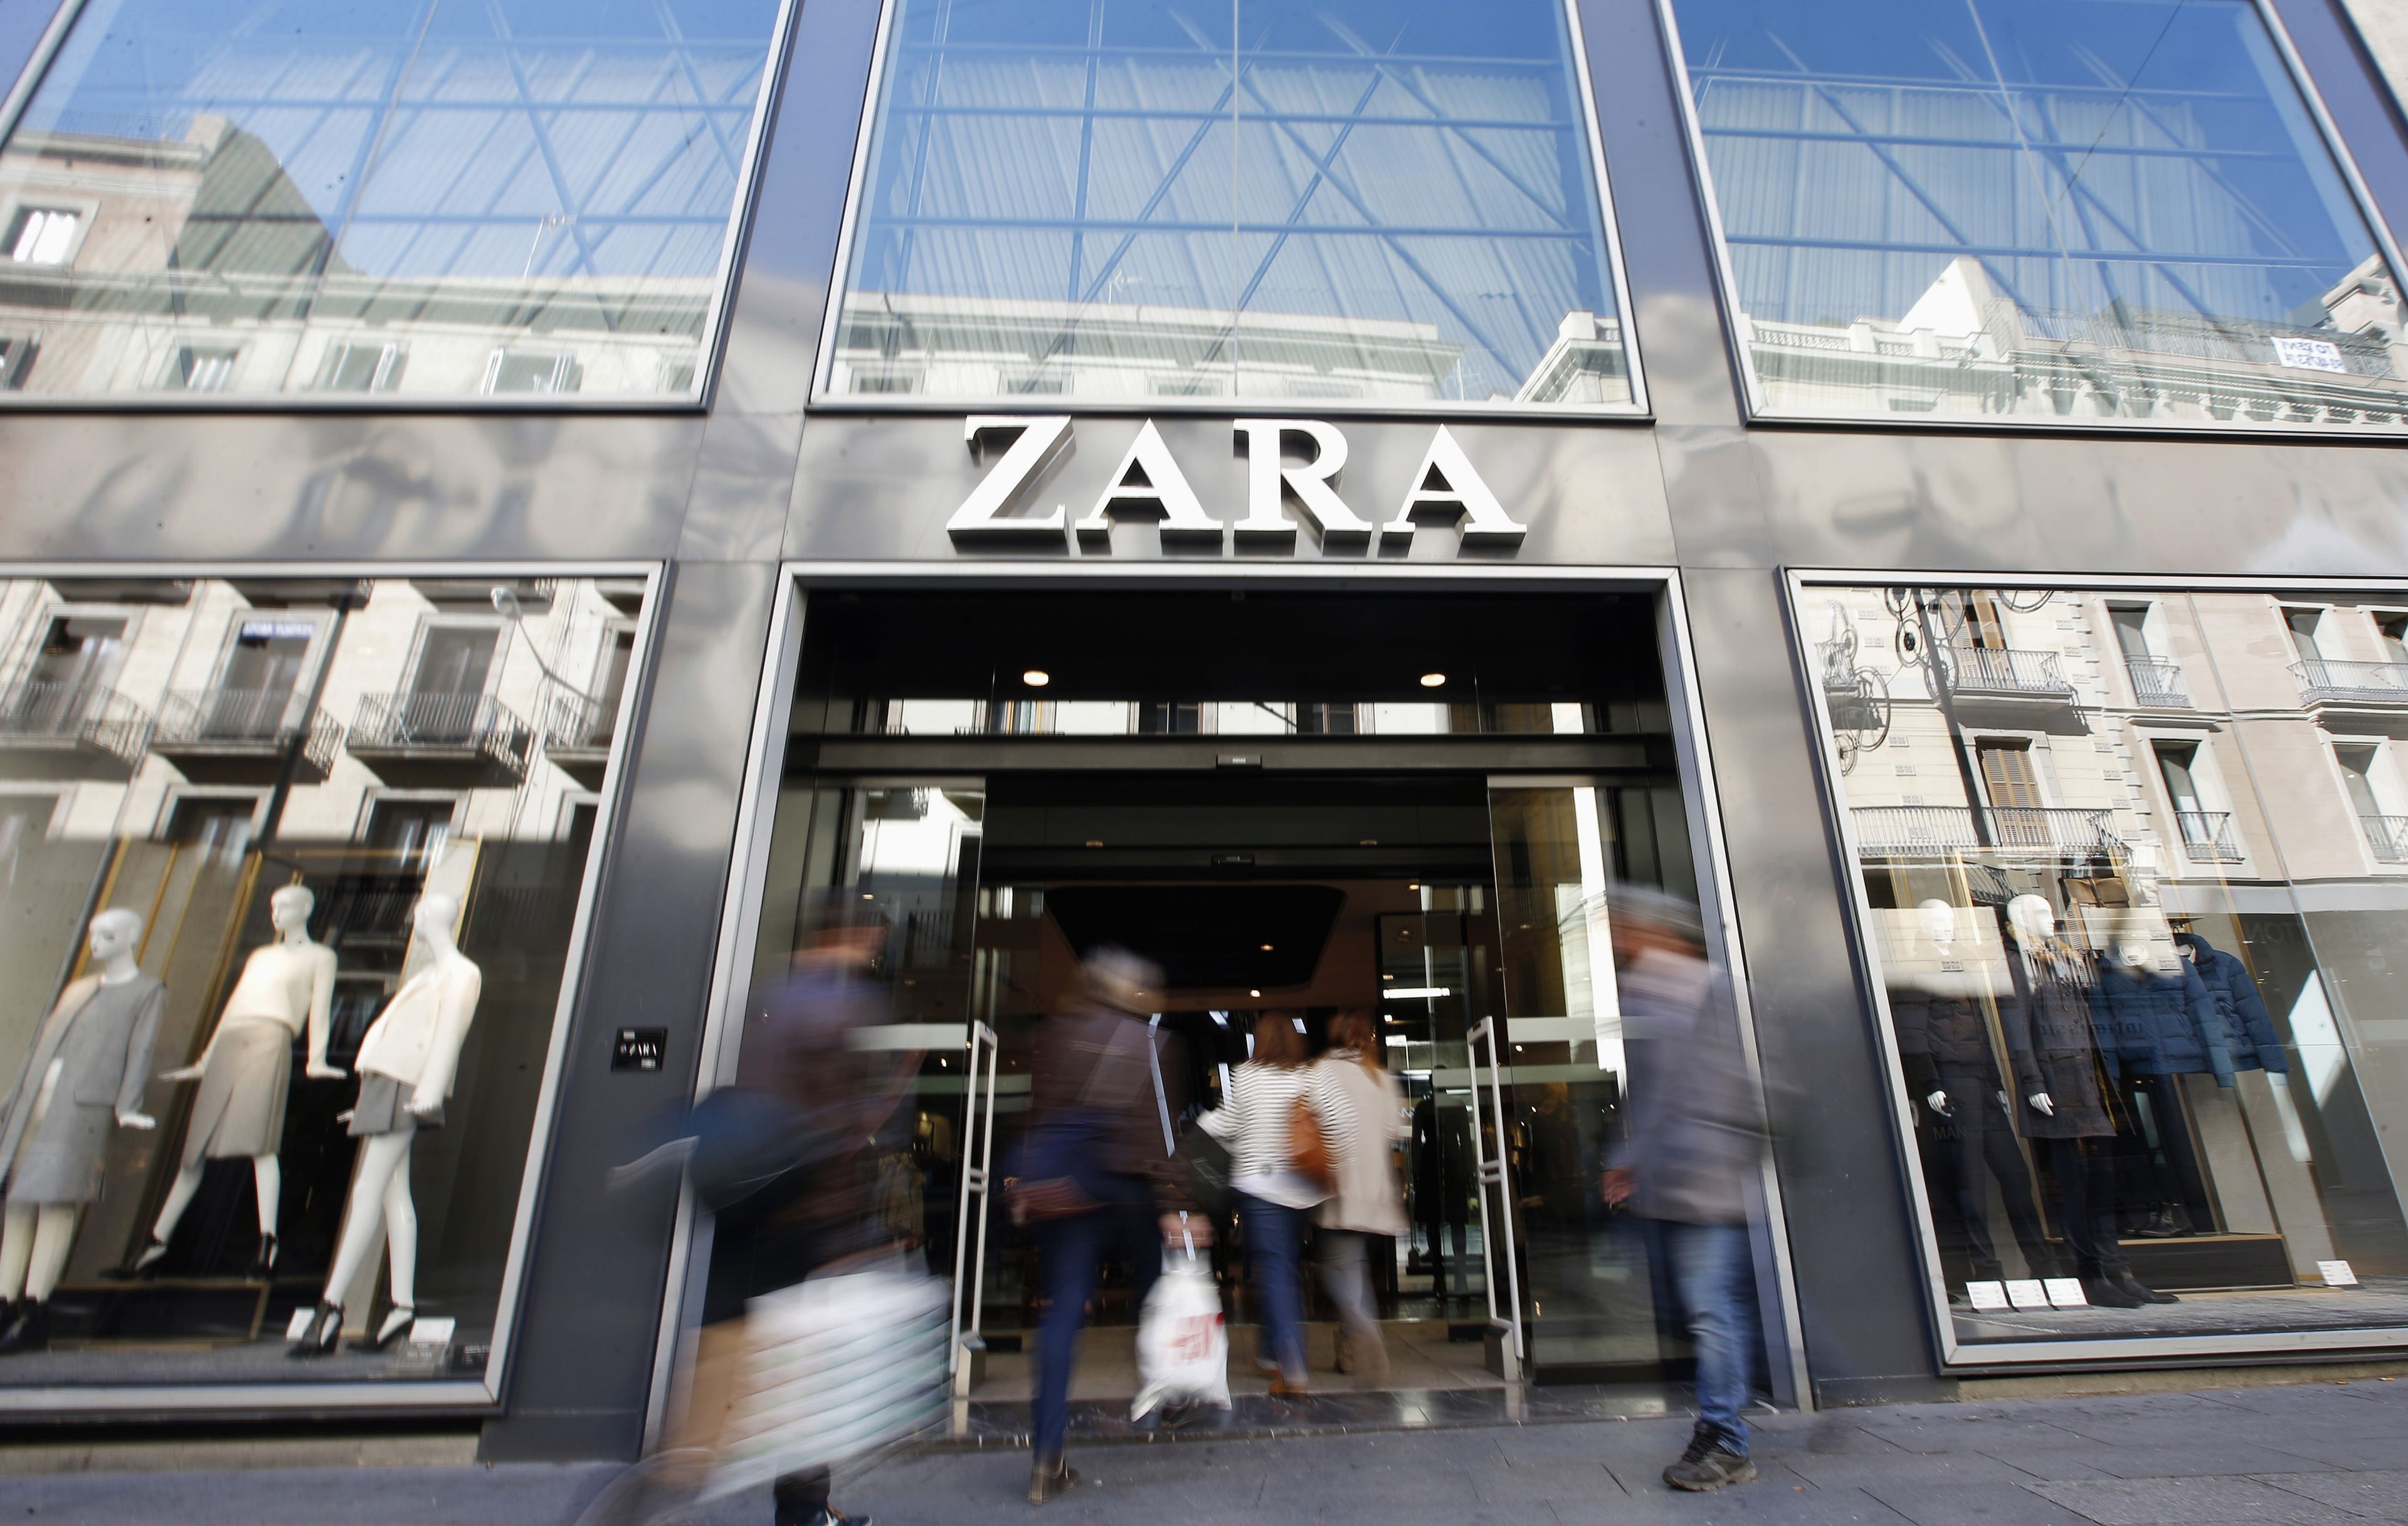 Zara Store, The Jewel Of Inditex.